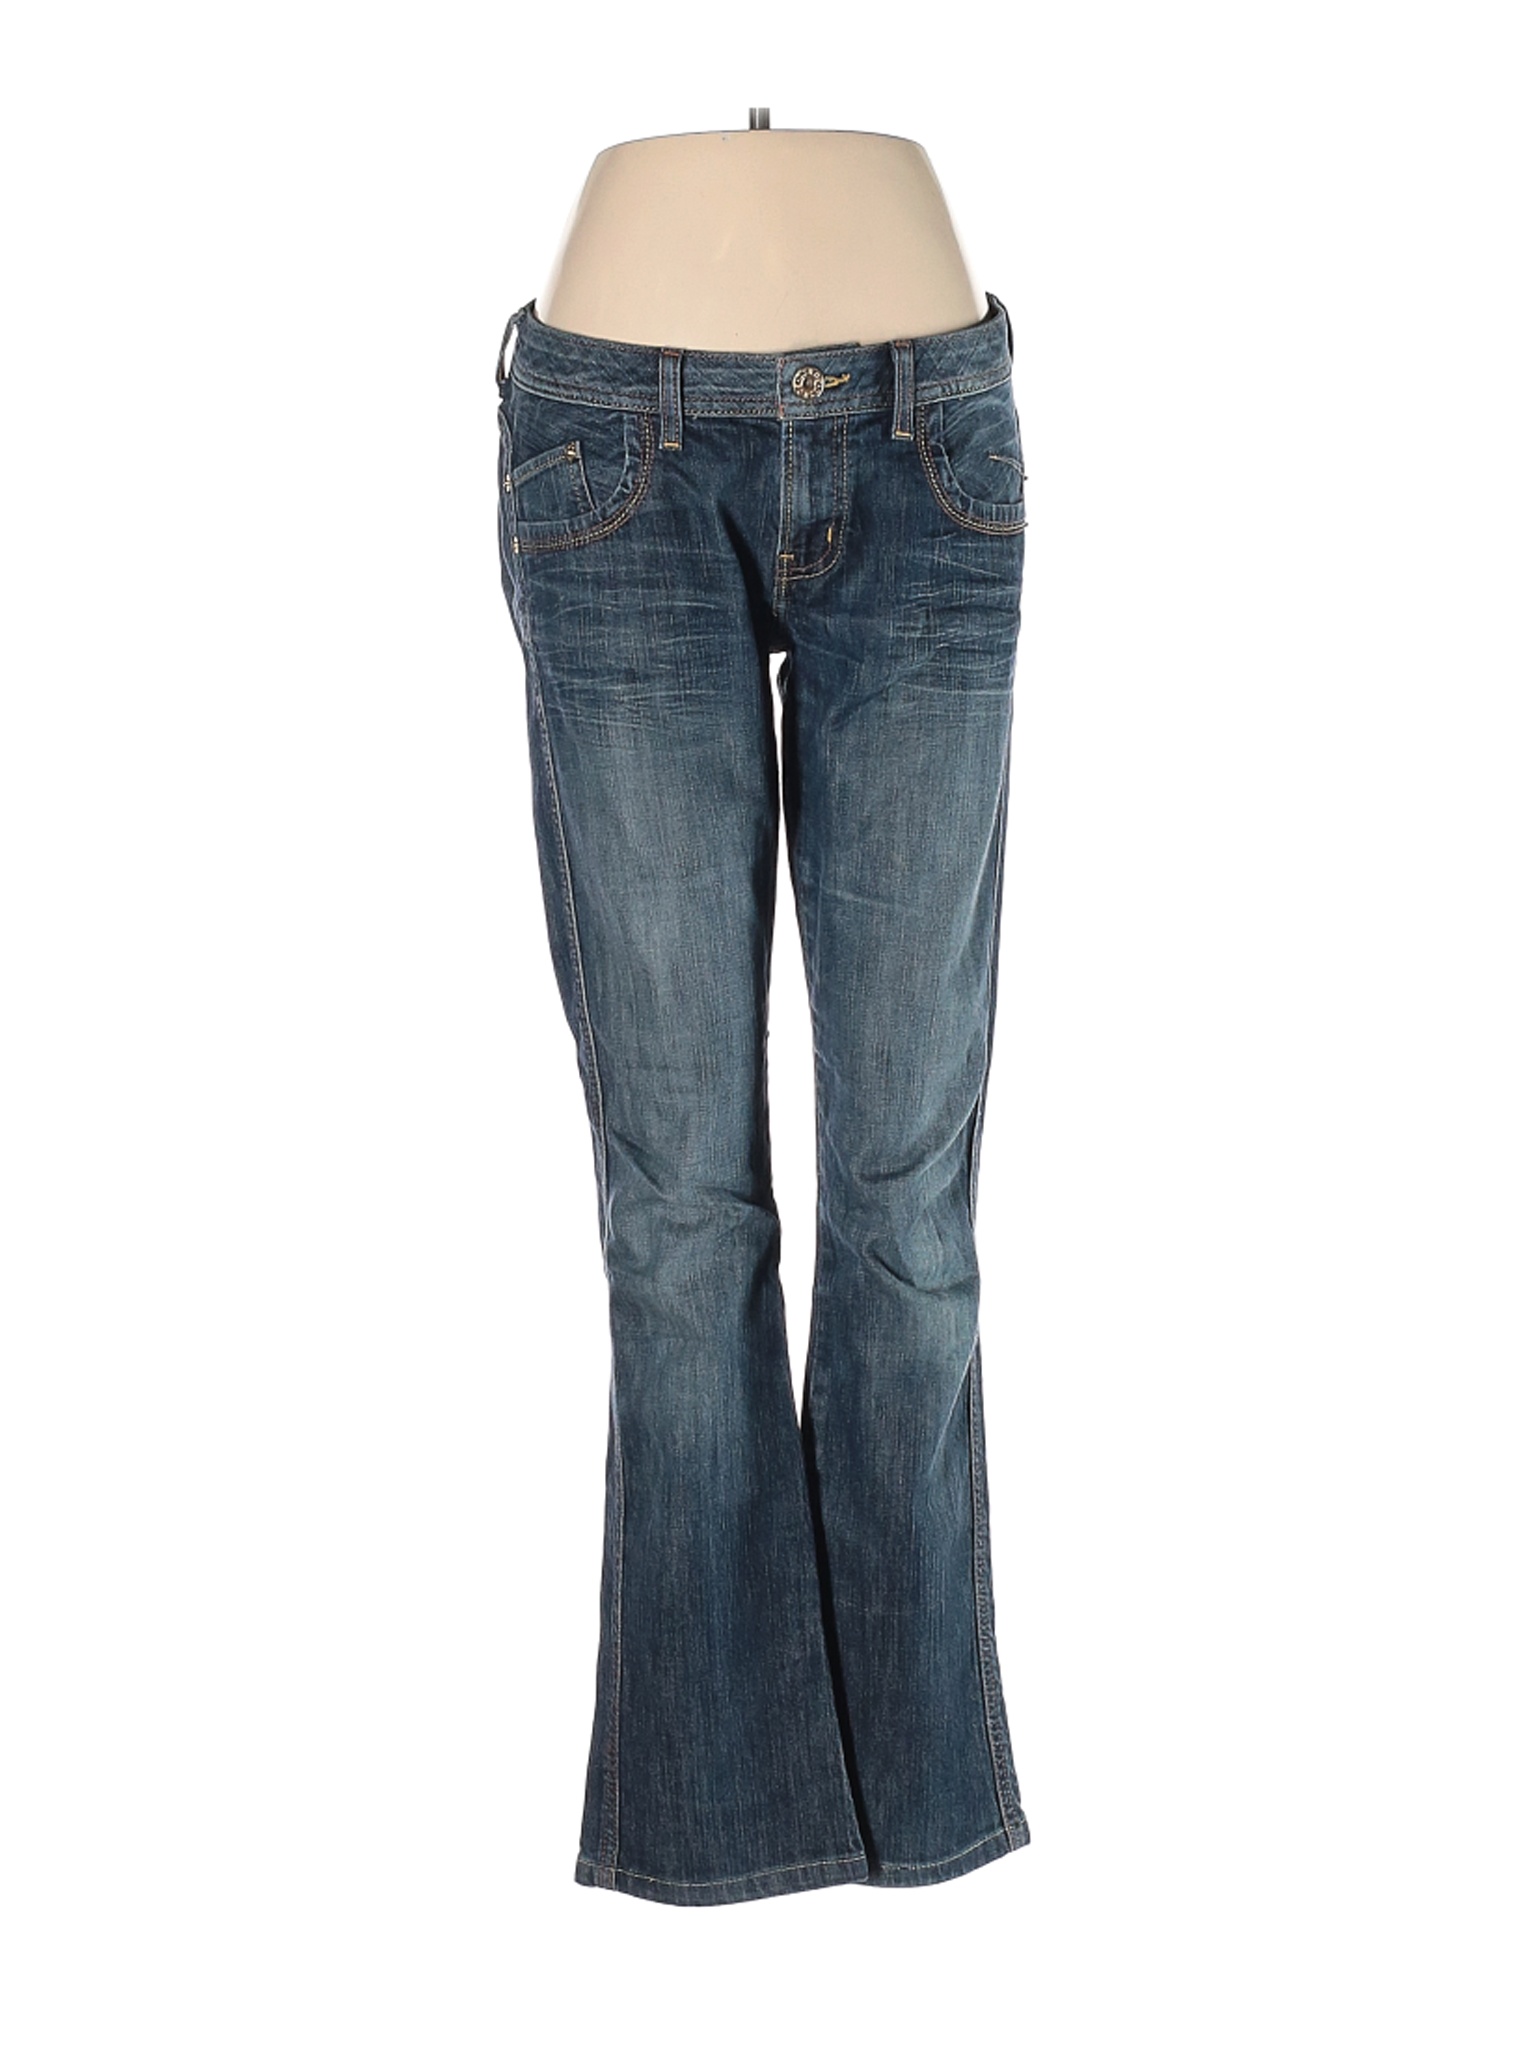 Guess Jeans Women Blue Jeans 29W | eBay